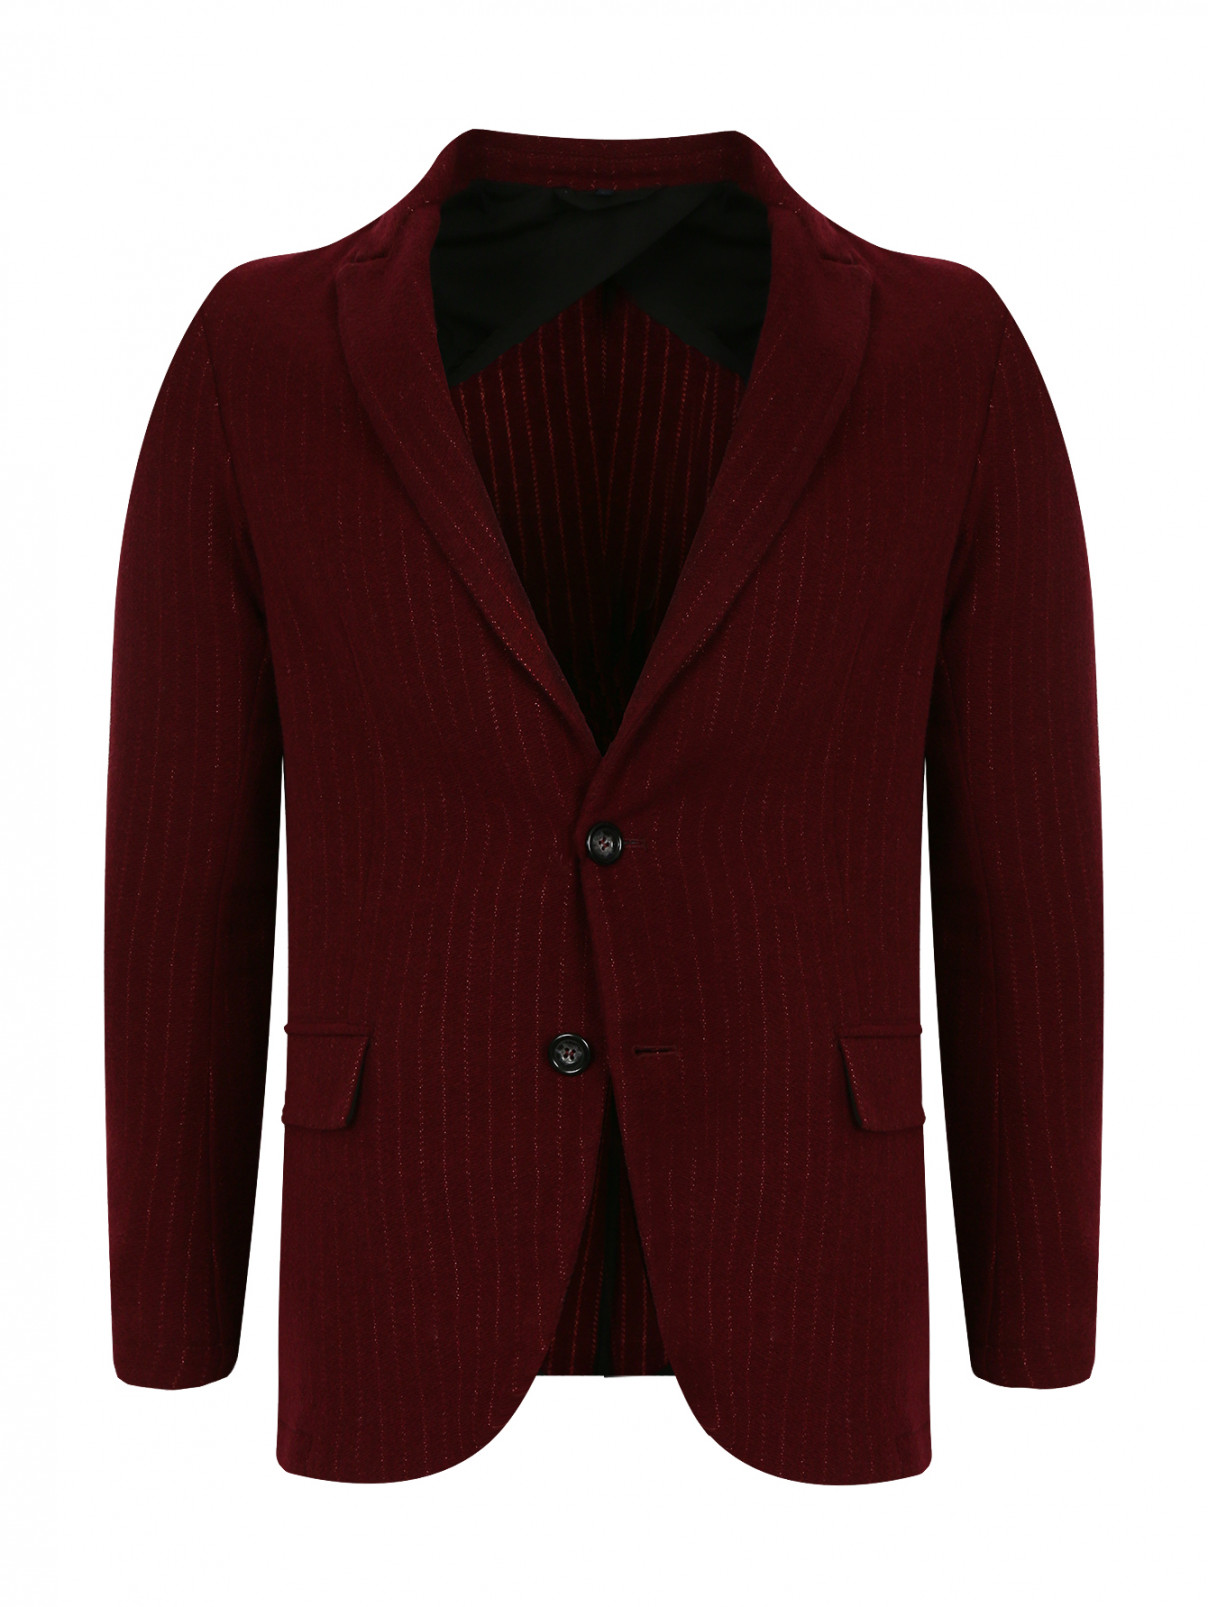 Пиджак из шерсти Armani Jeans  –  Общий вид  – Цвет:  Красный